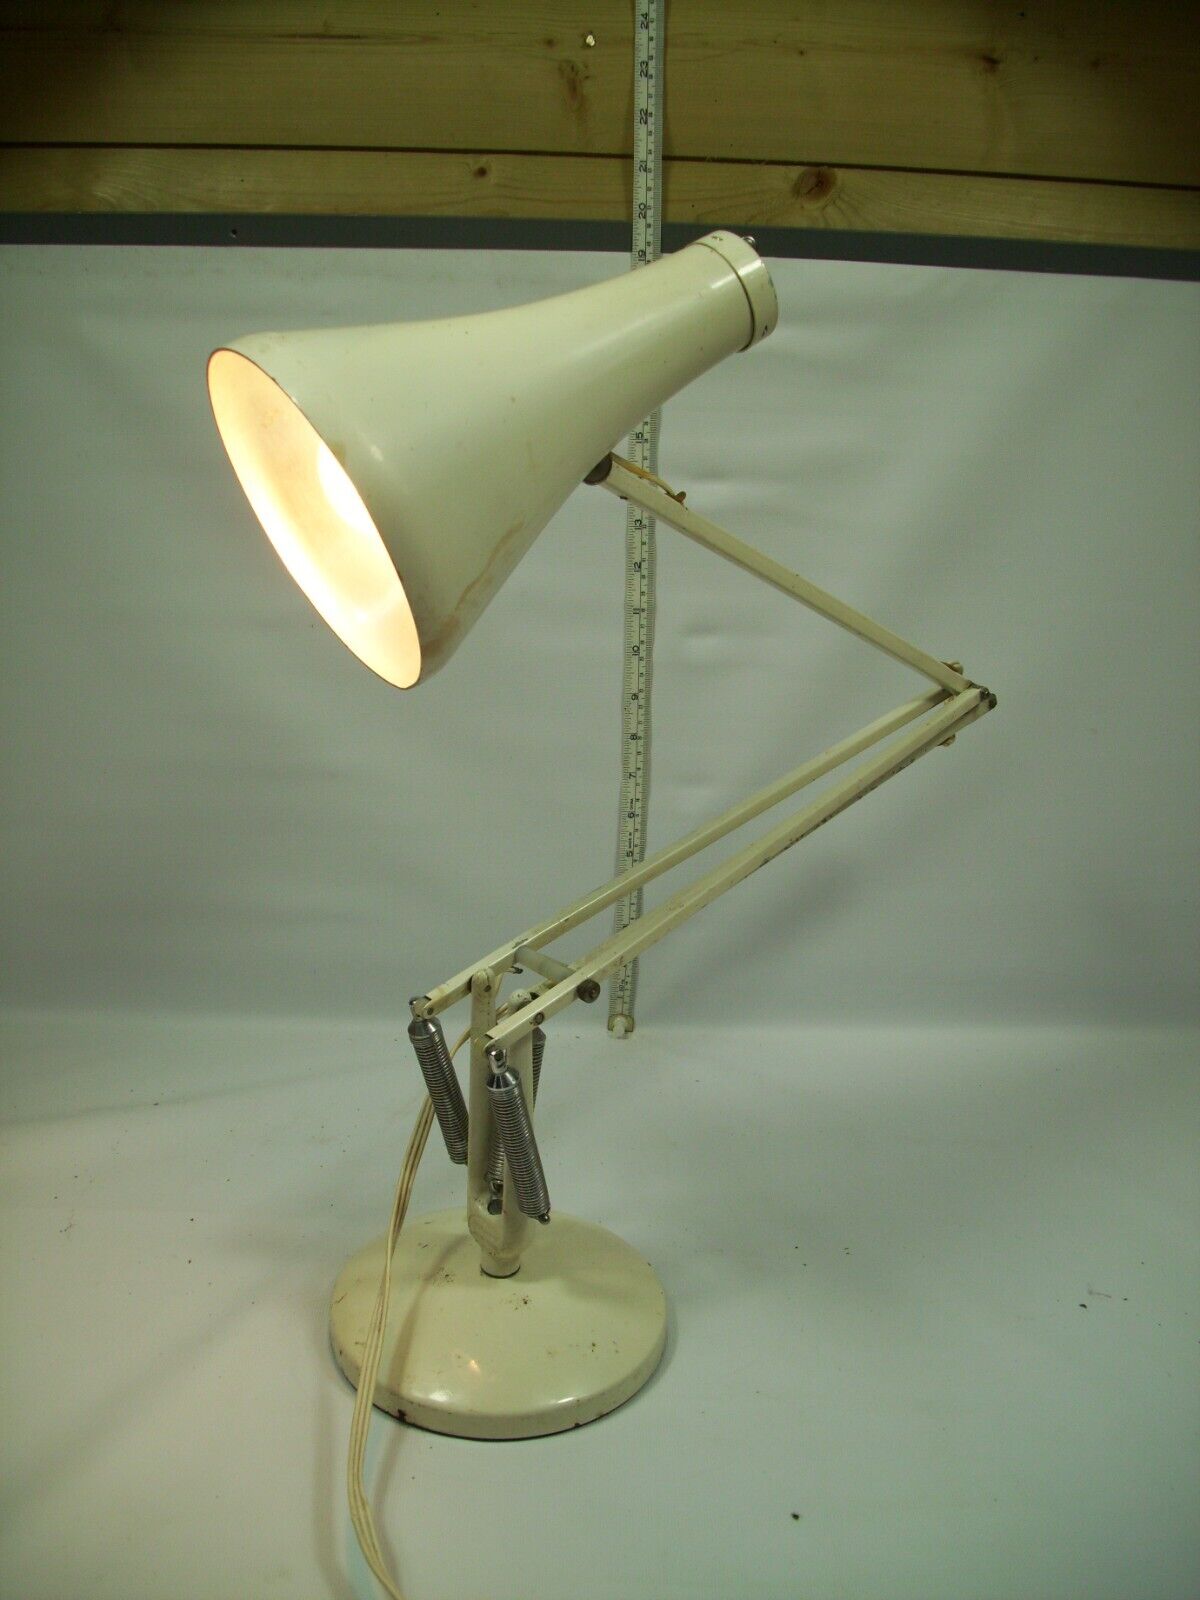 Genuine Vintage Herbert Terry & Sons Ltd Anglepoise Desk Lamp (Model 75)